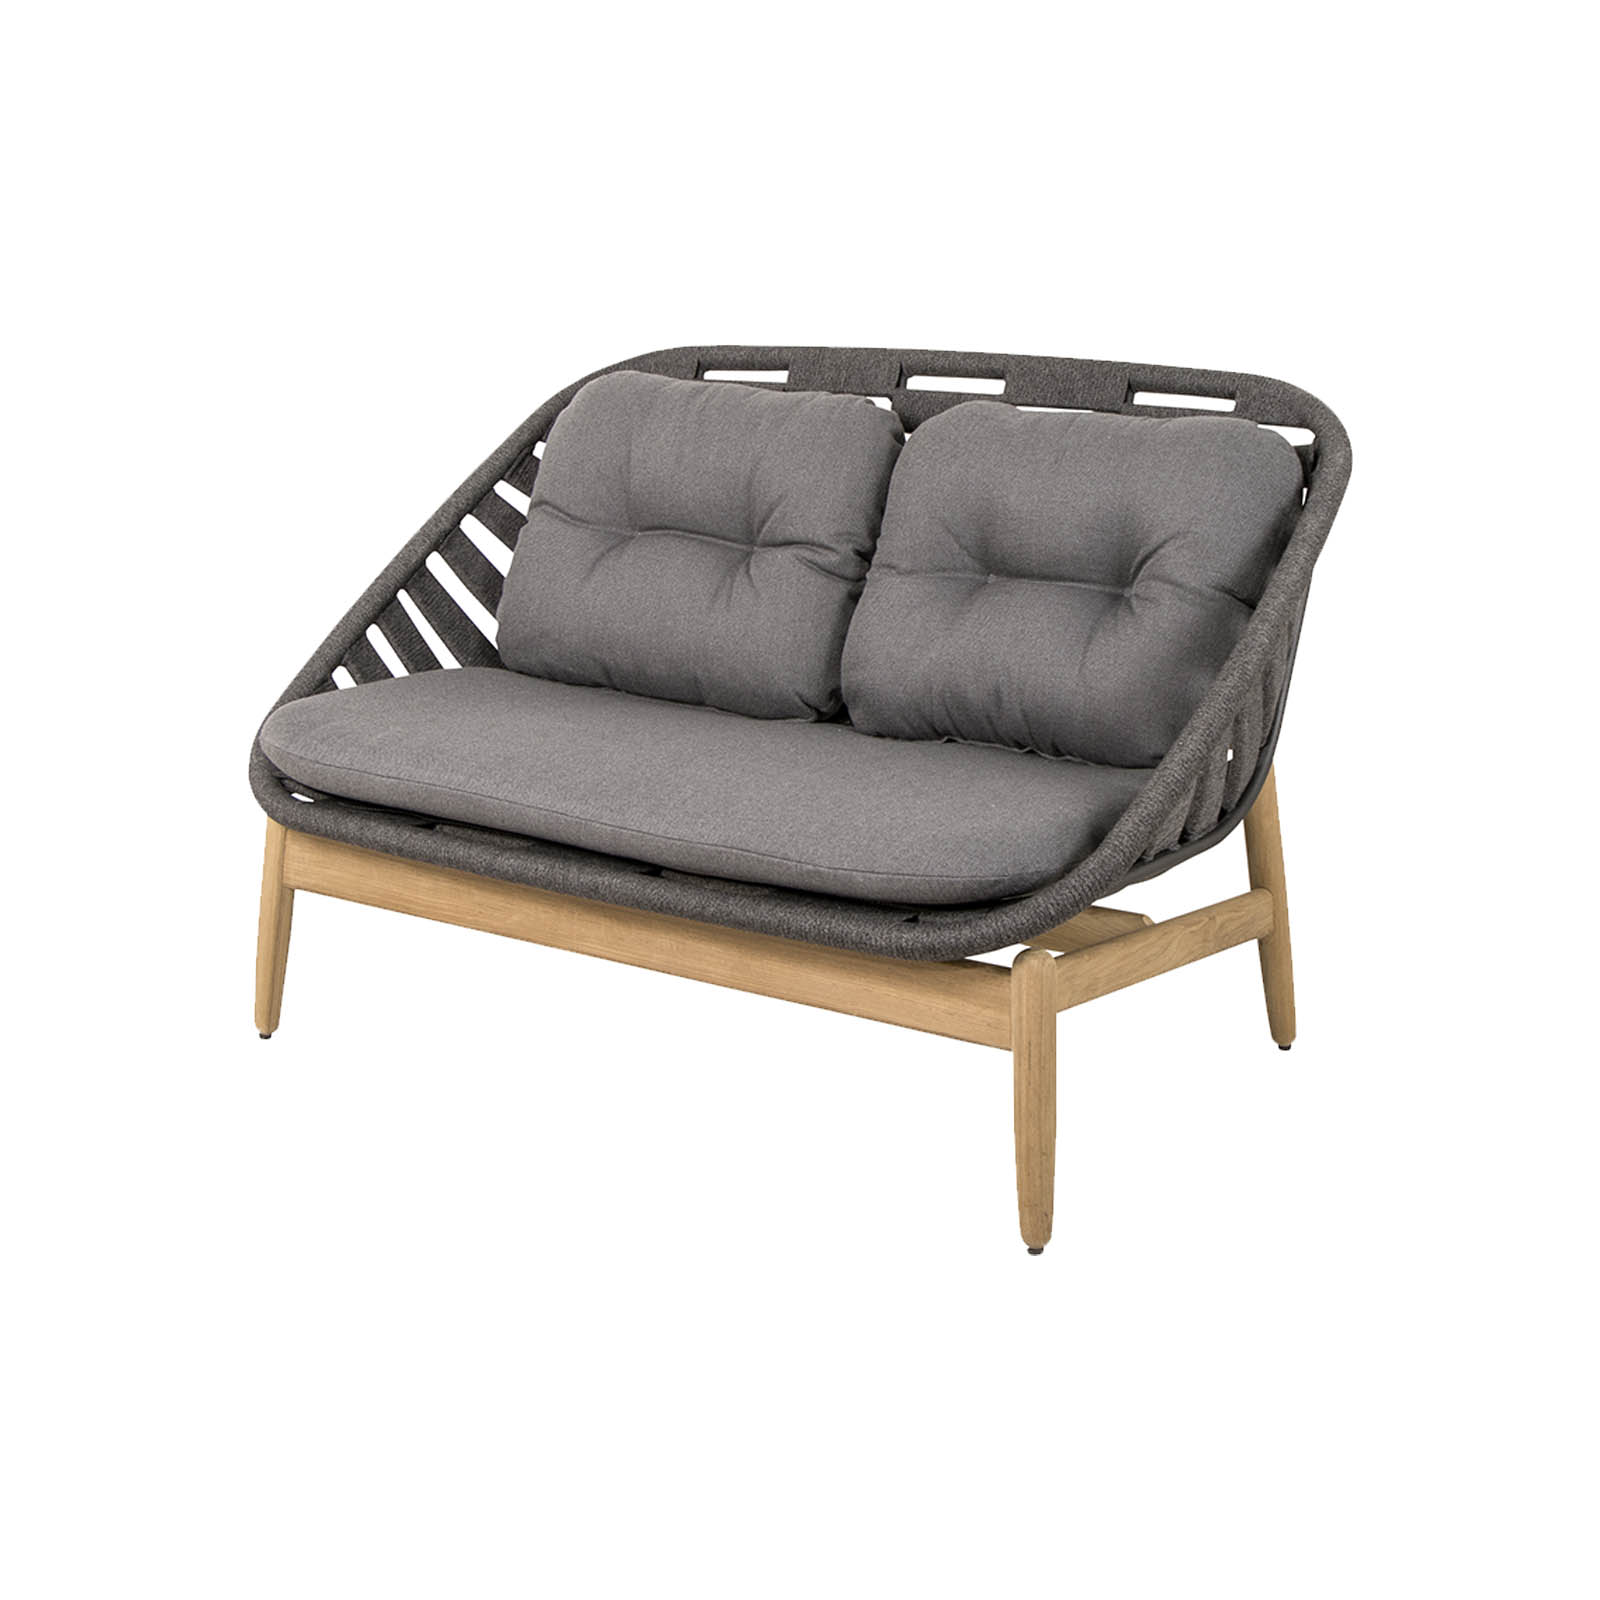 Strington 2-Sitzer Sofa aus Cane-line Soft Rope in Teak mit Kissen aus Cane-line AirTouch in Grey